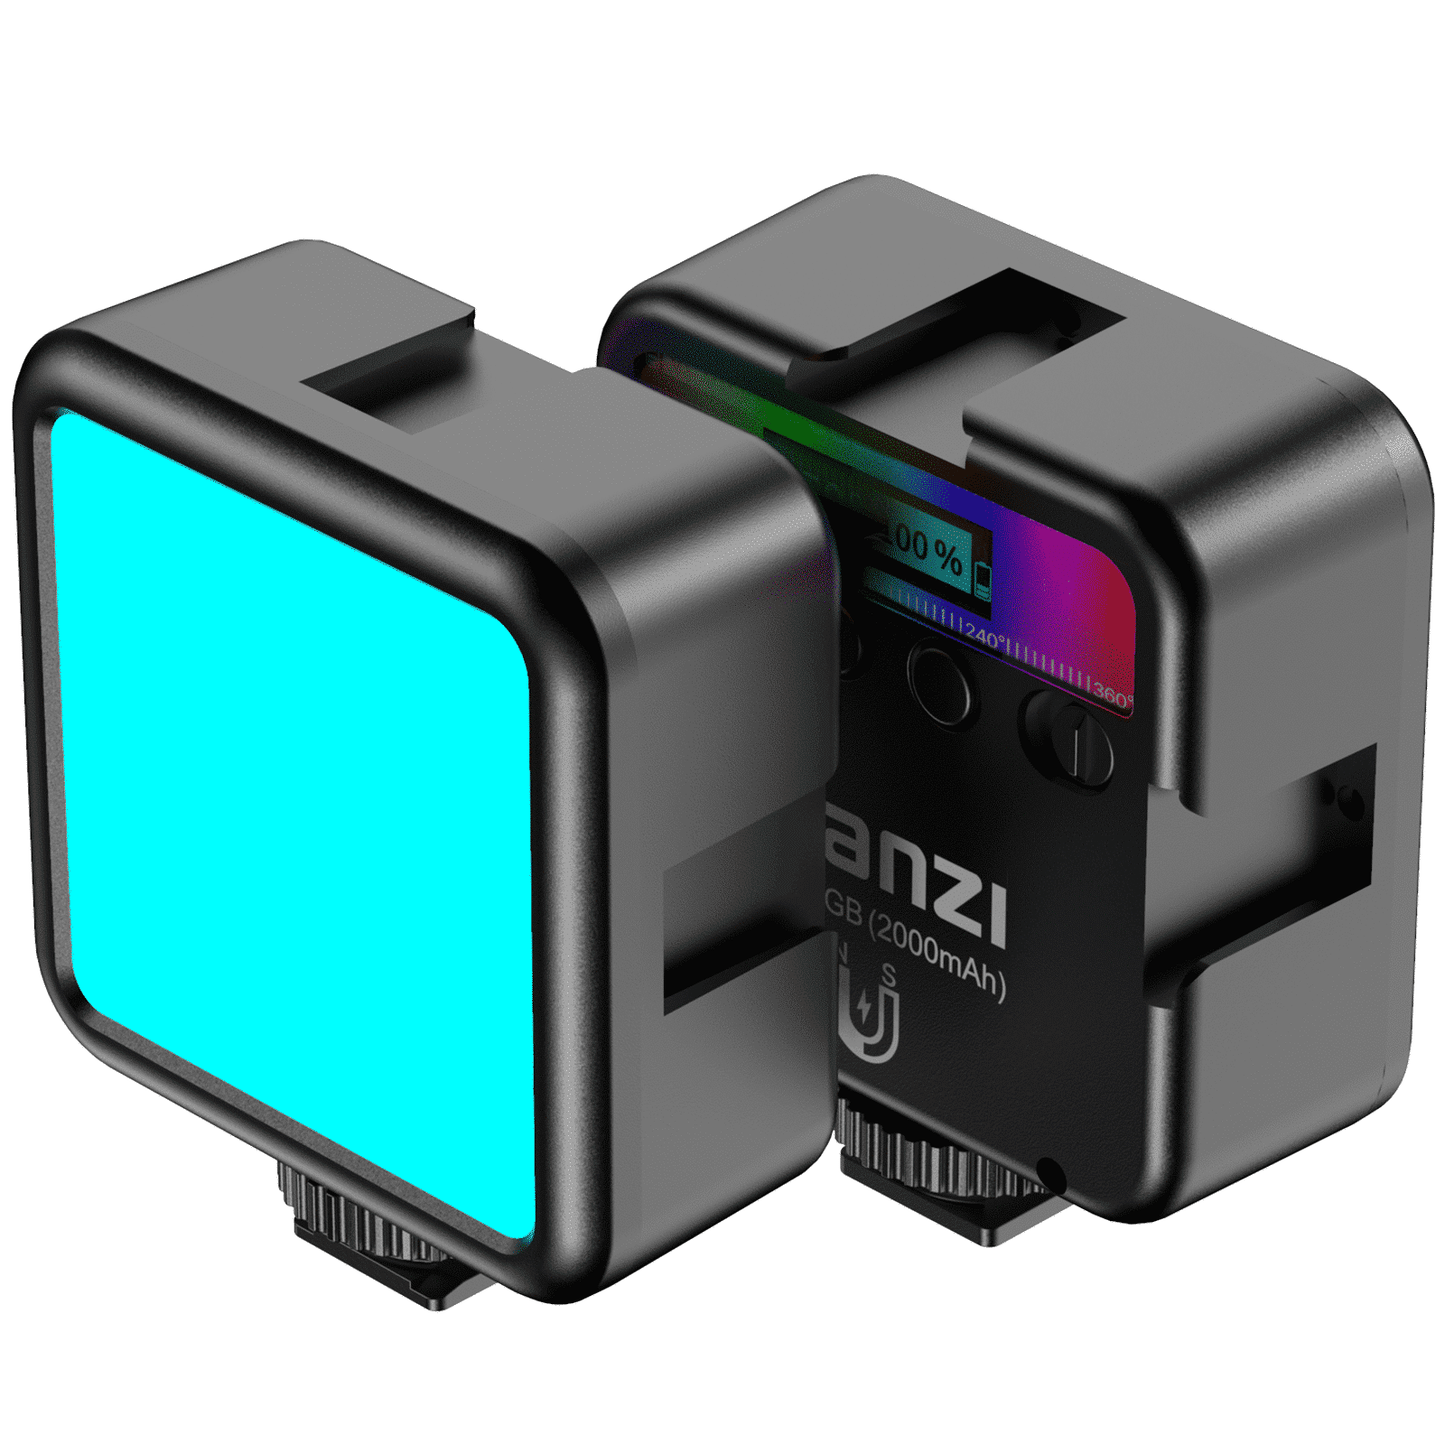 Ulanzi VL49 RGB Multi Color LED-videolamp